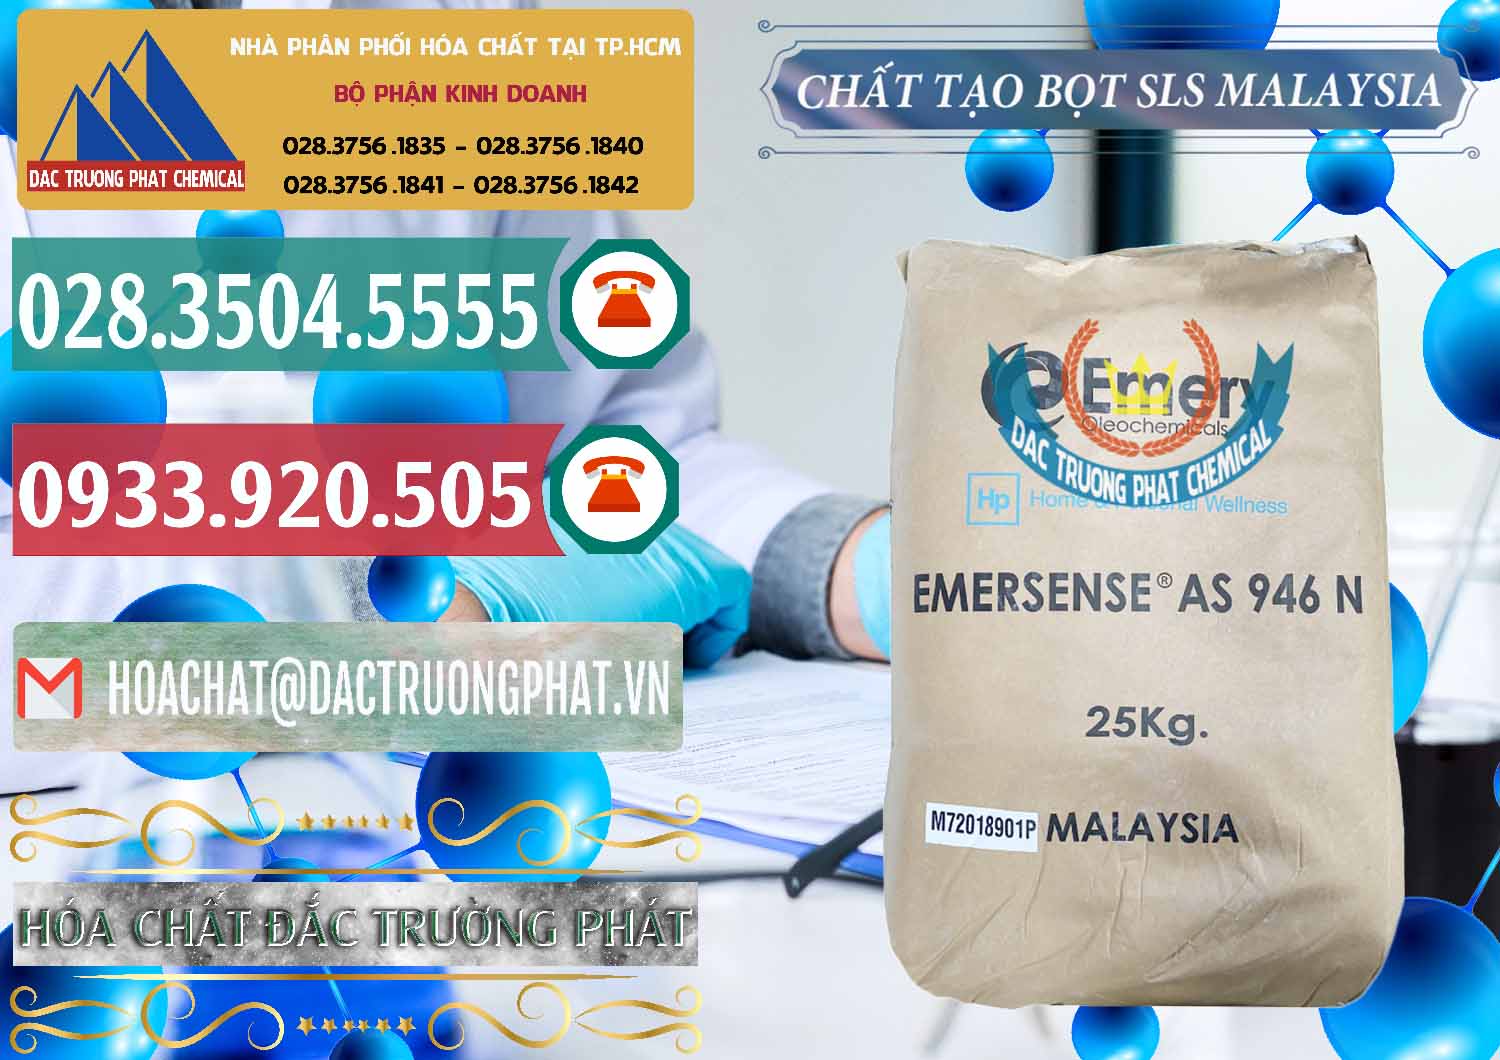 Kinh doanh & bán Chất Tạo Bọt SLS Emery - Emersense AS 946N Mã Lai Malaysia - 0423 - Cung cấp ( phân phối ) hóa chất tại TP.HCM - muabanhoachat.vn